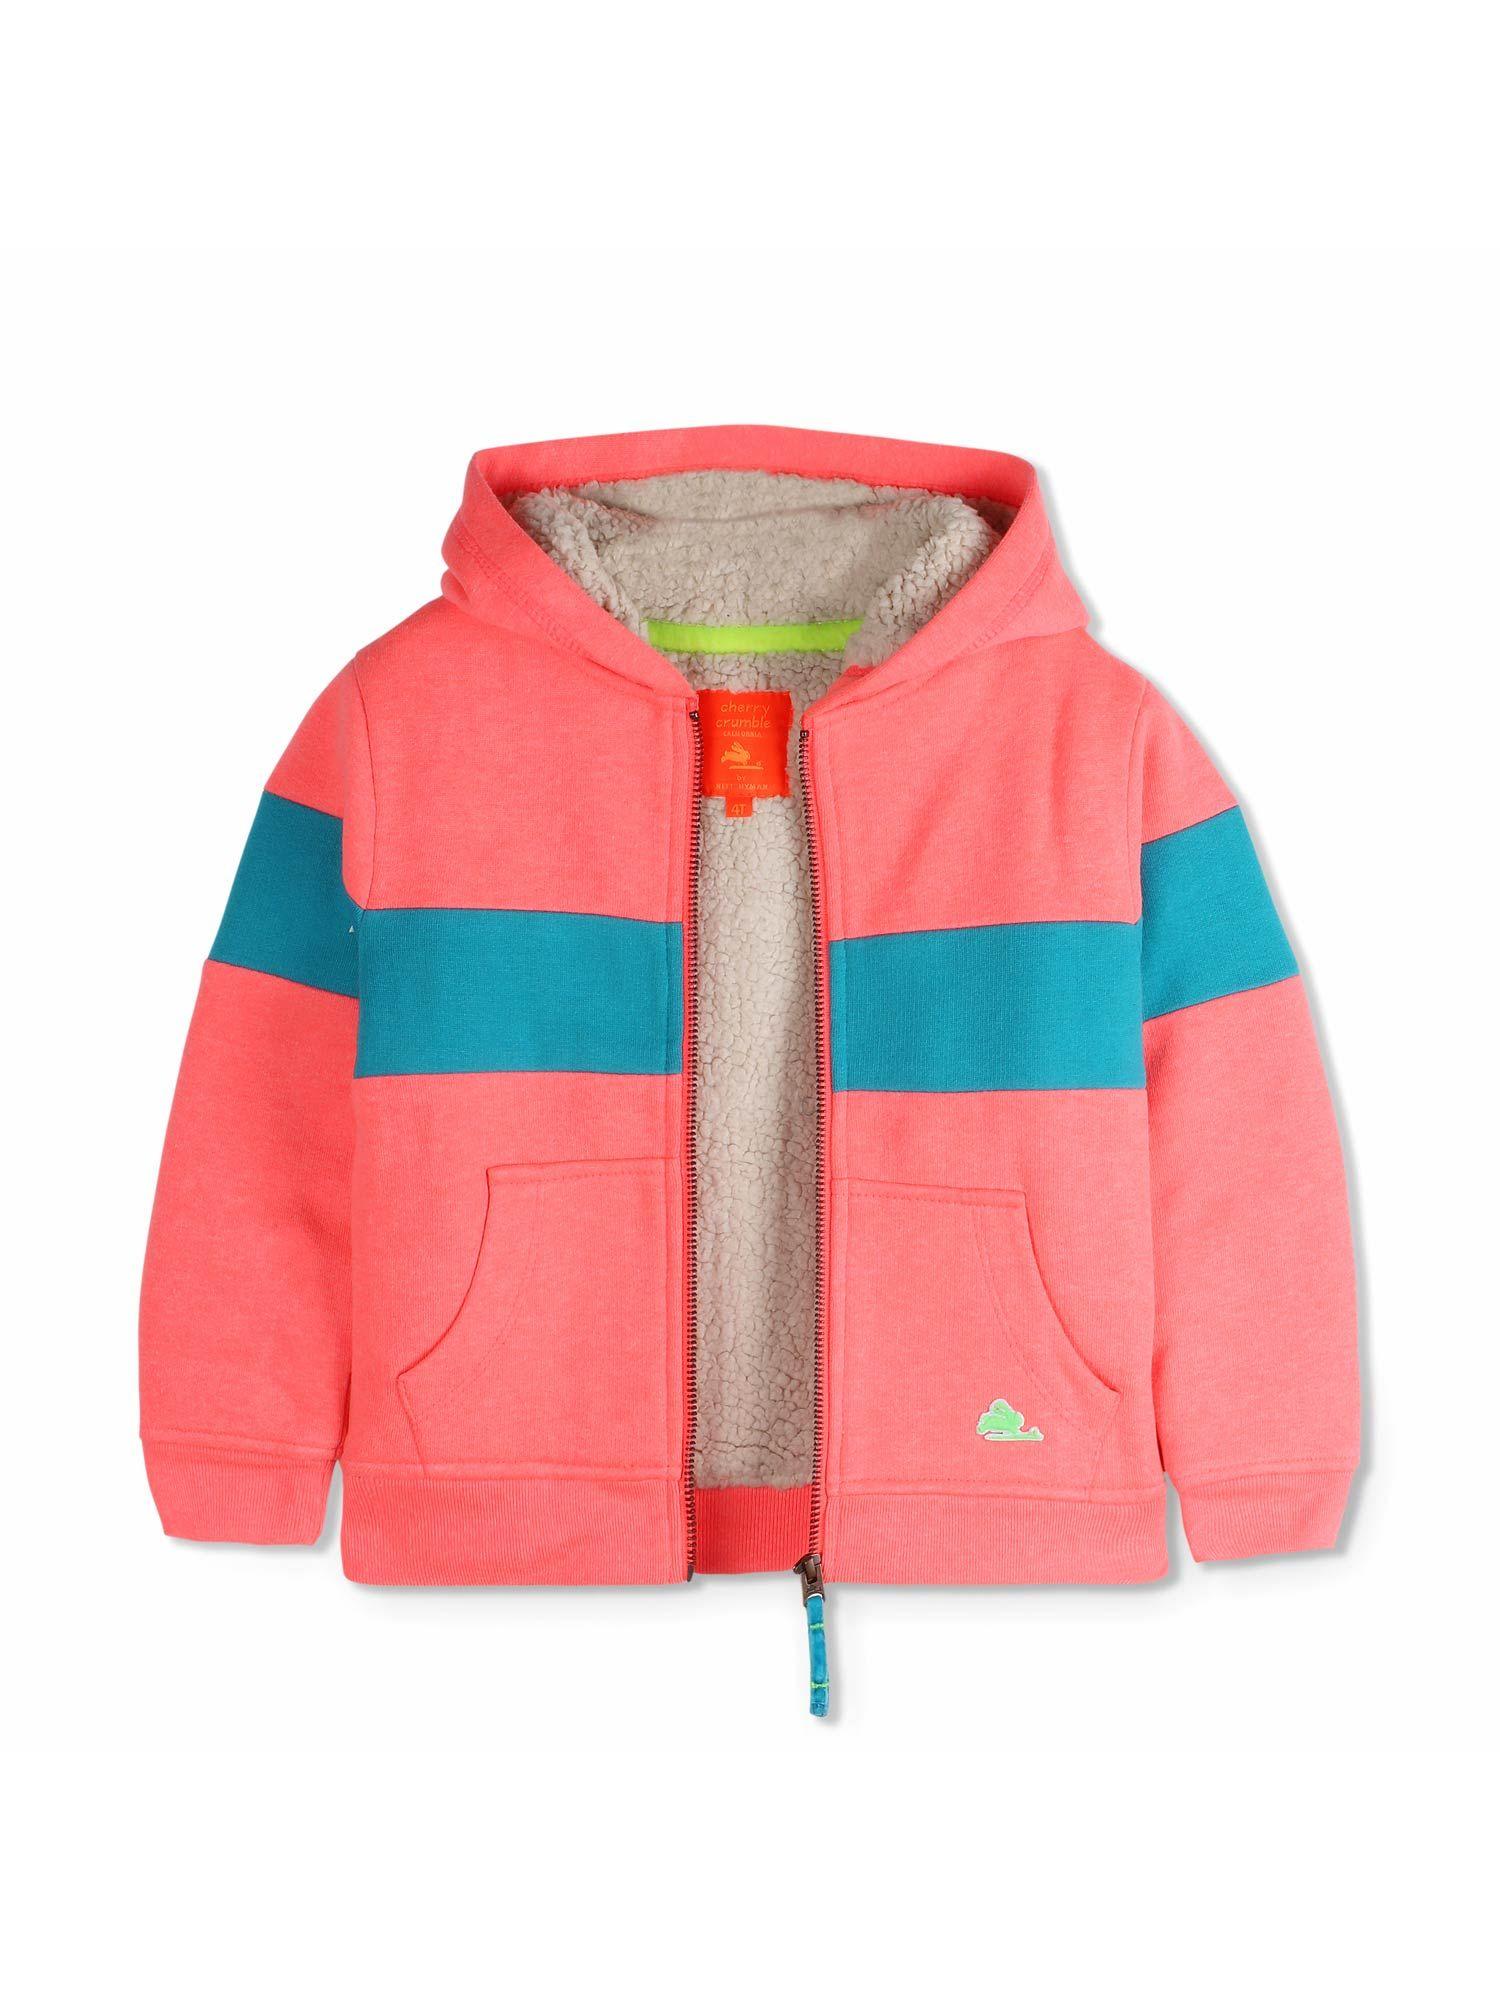 Boys & Girls Bright Peach Snug Sherpa Hooded Sweatshirt